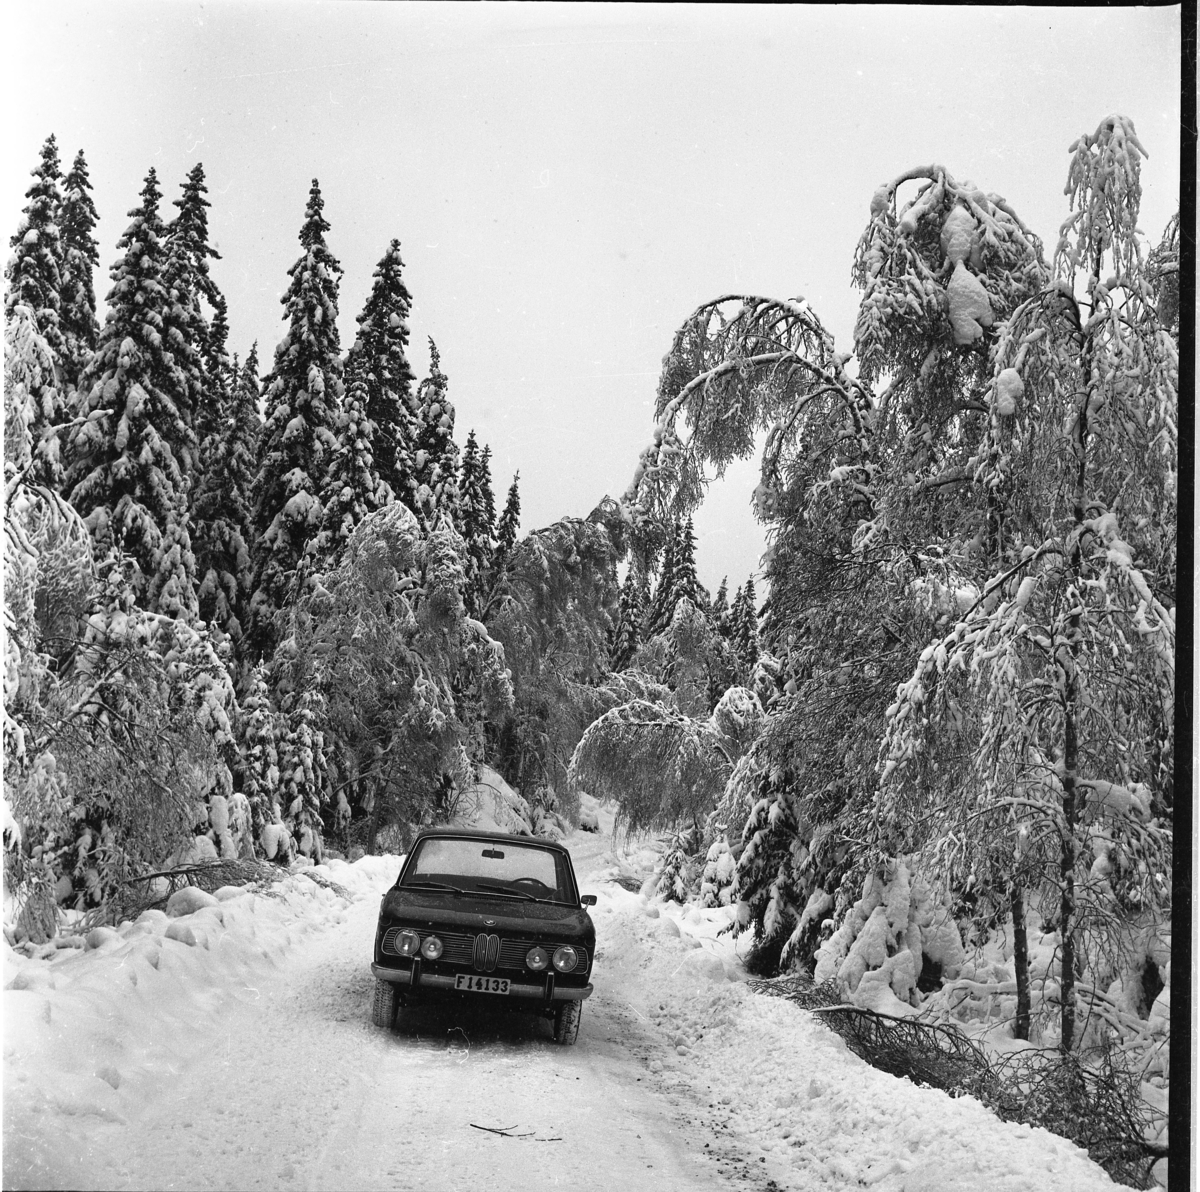 En BMW står parkerad på skogsväg i ett snöigt landskap.